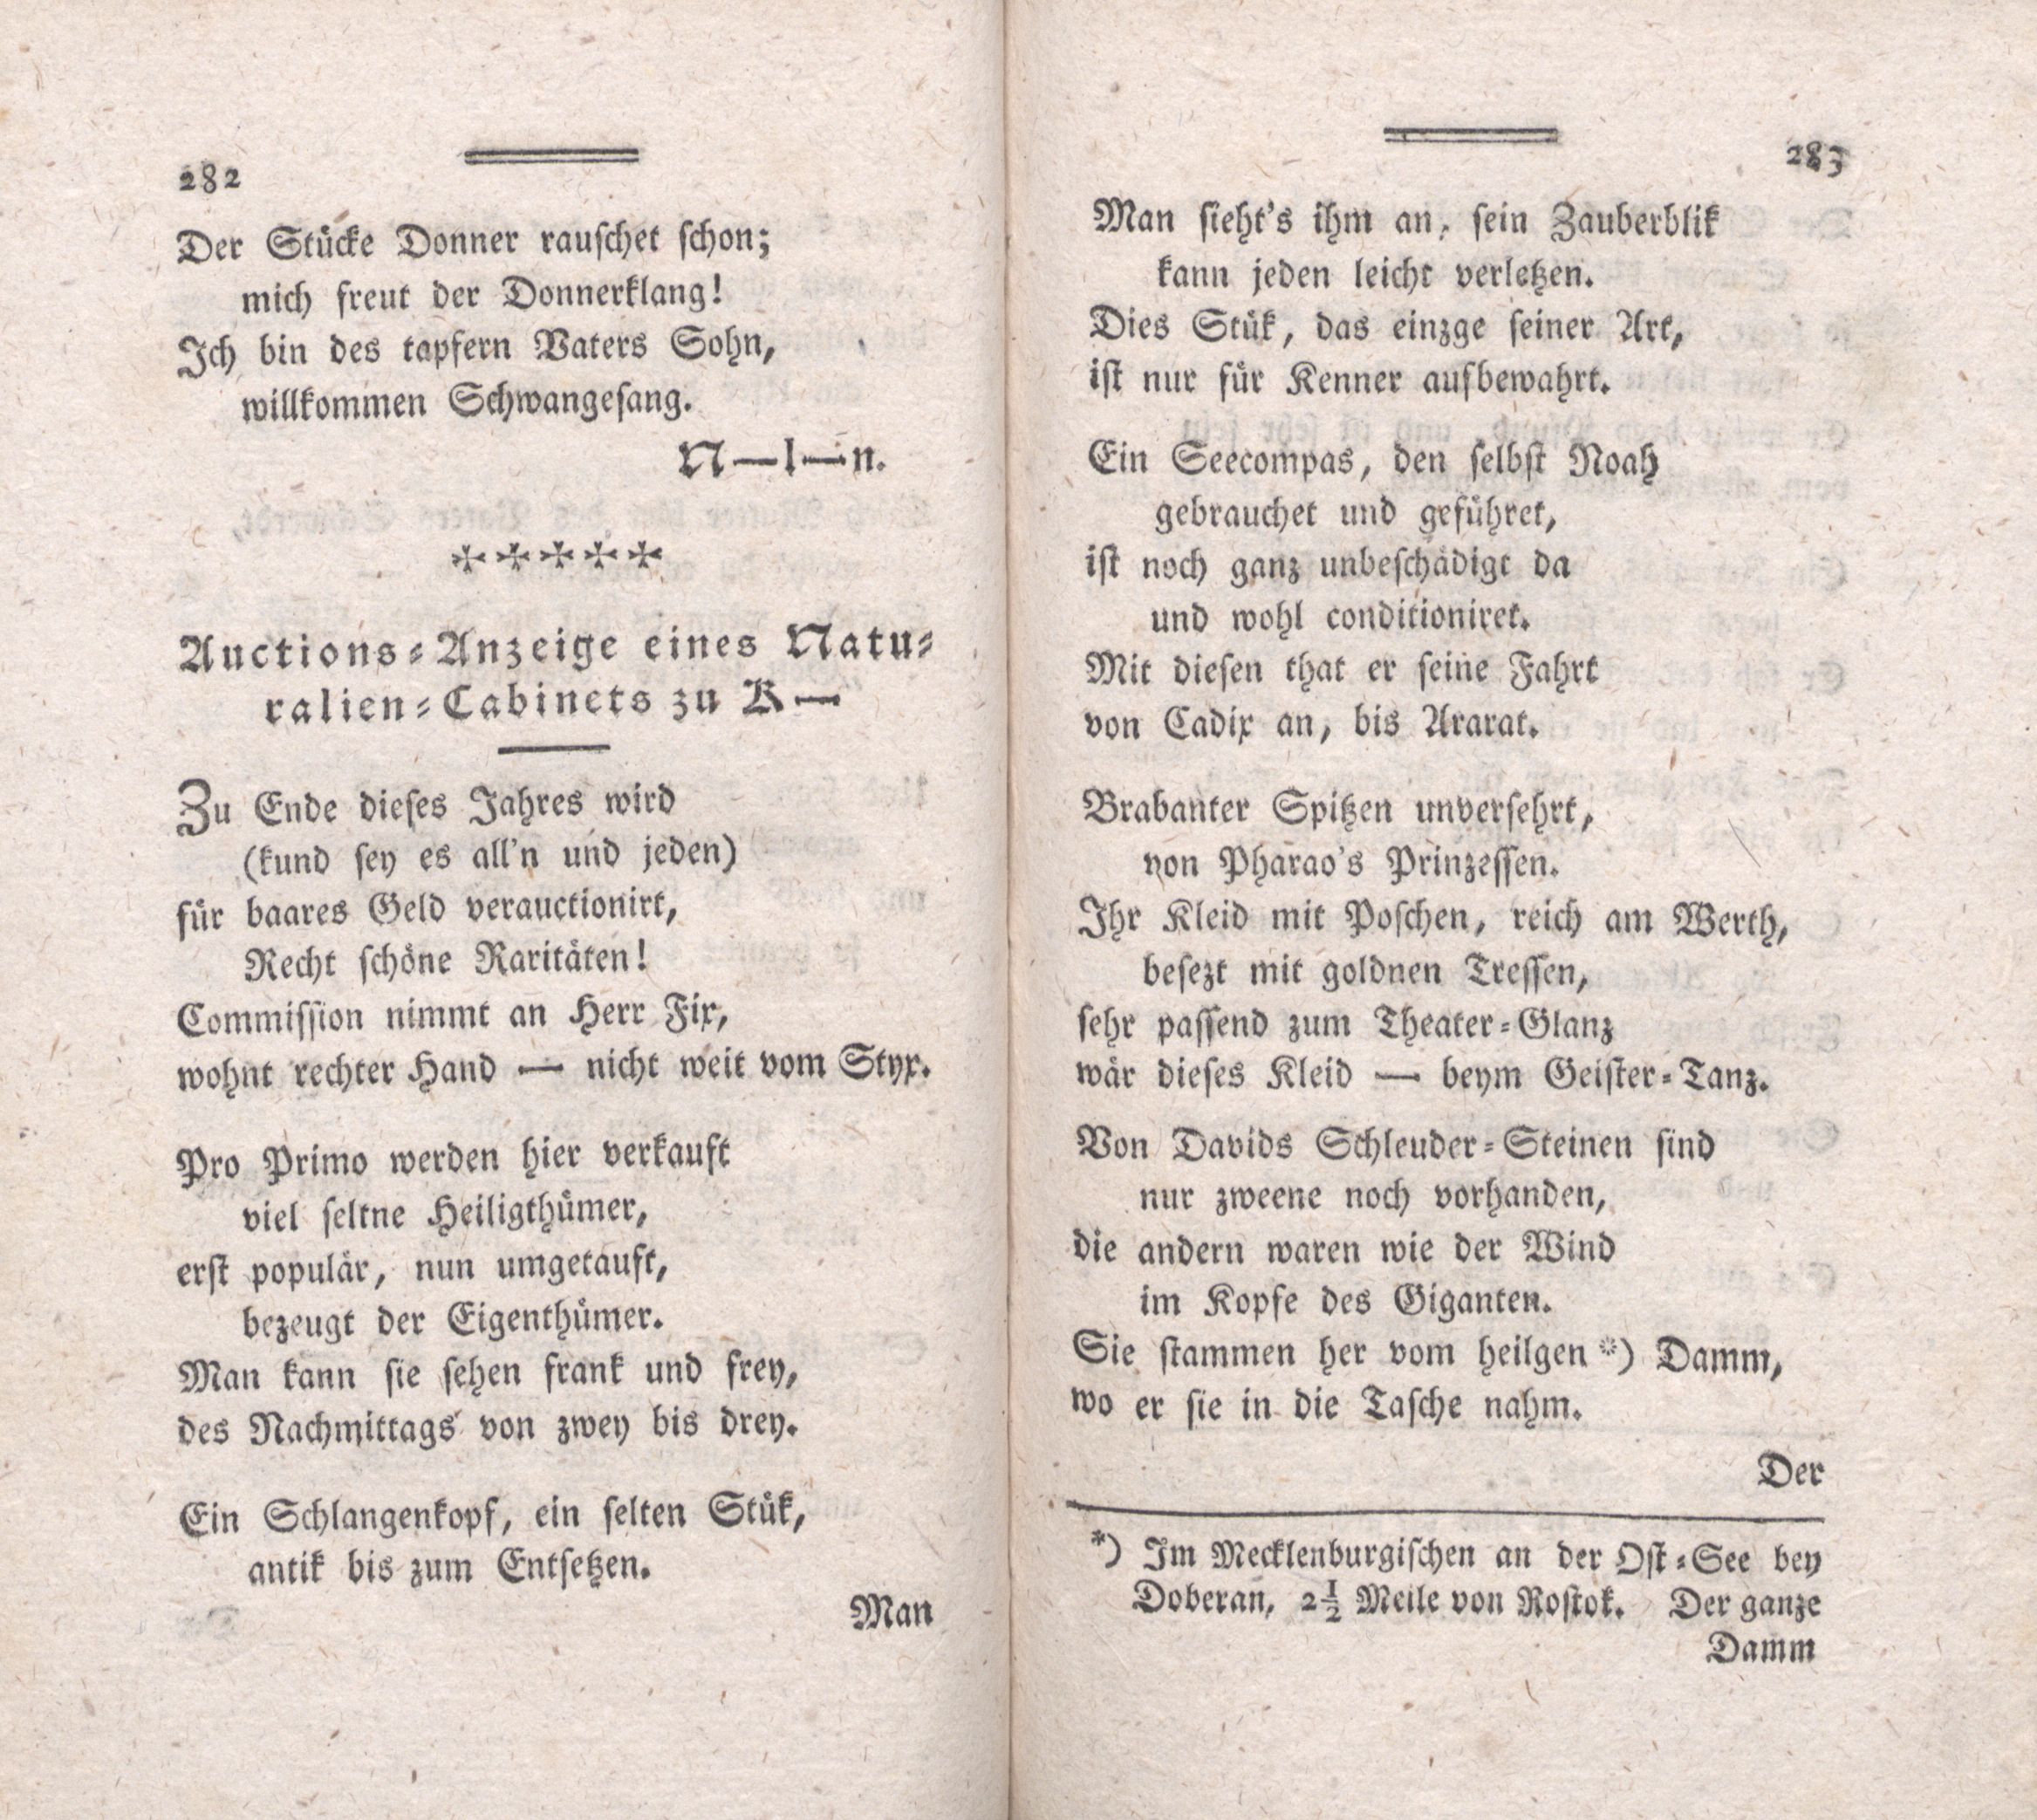 Auctions-Anzeige eines Naturalien-Cabinets zu K- (1787) | 1. (282-283) Main body of text